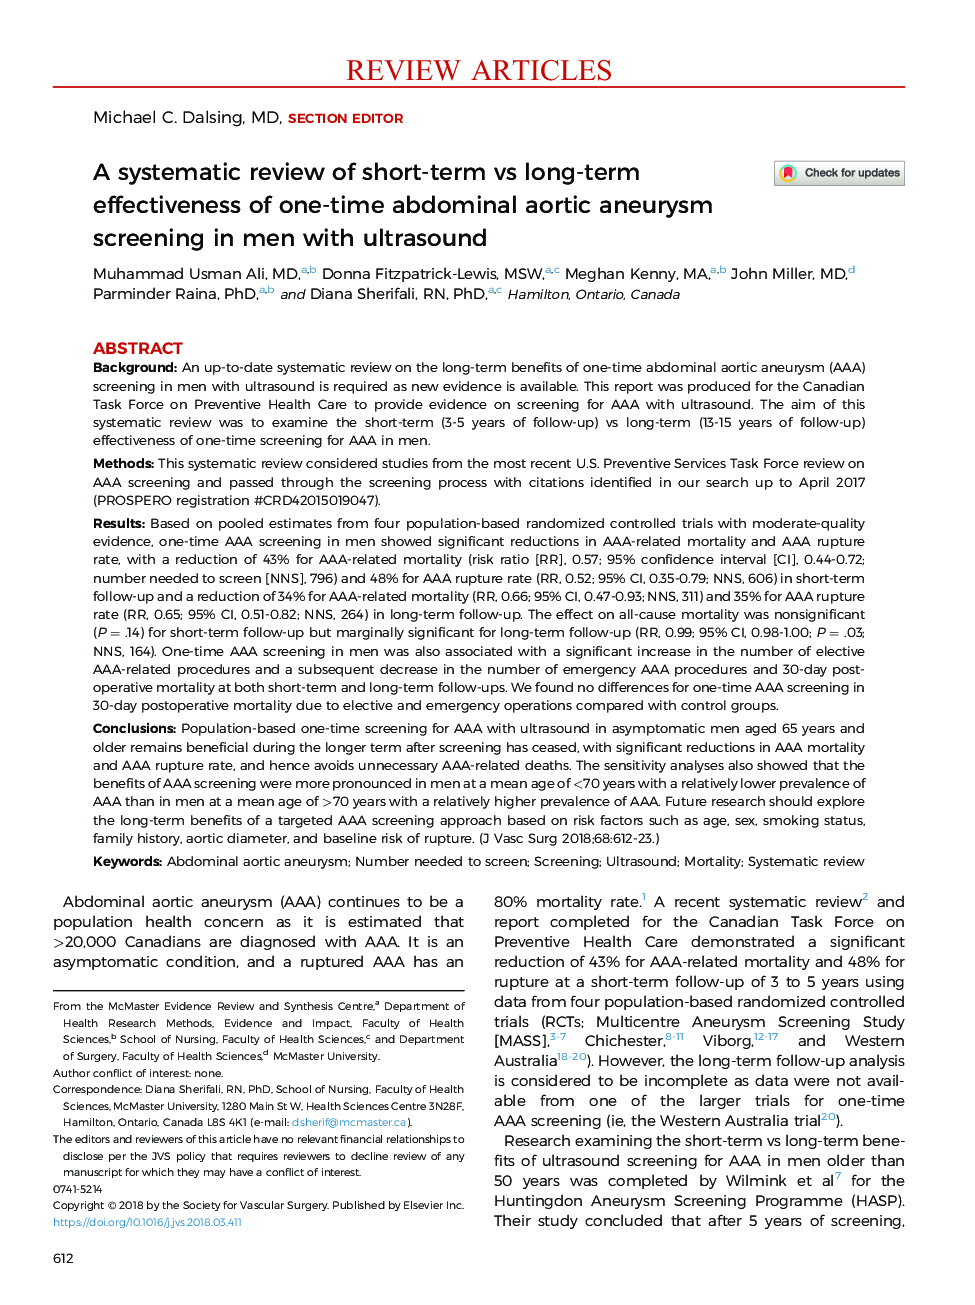 بررسی سیستماتیک اثربخشی کوتاه مدت در برابر اثرات طولانی مدت یکبار آنوریسم آئورت شکمی در مردان مبتلا به سونوگرافی 